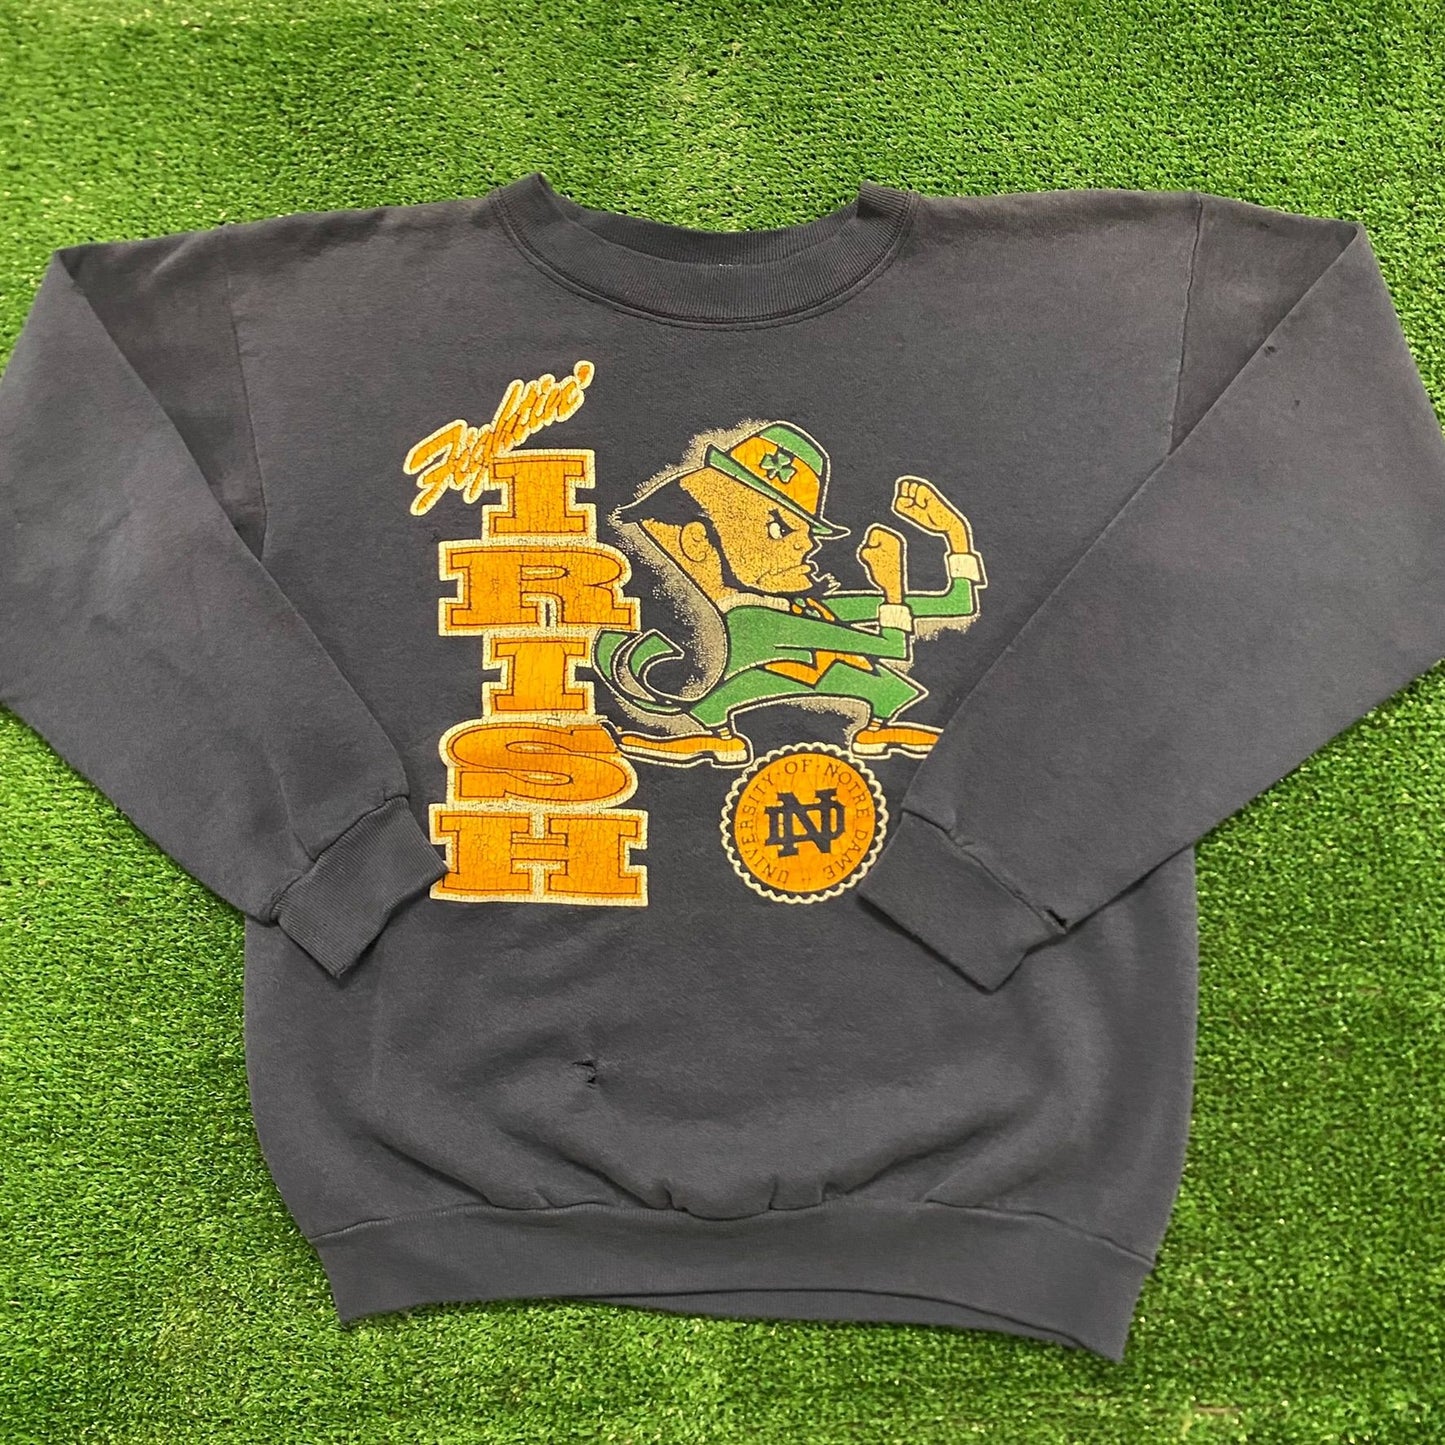 Notre Dame Fightin' Irish Vintage 90s College Sweatshirt